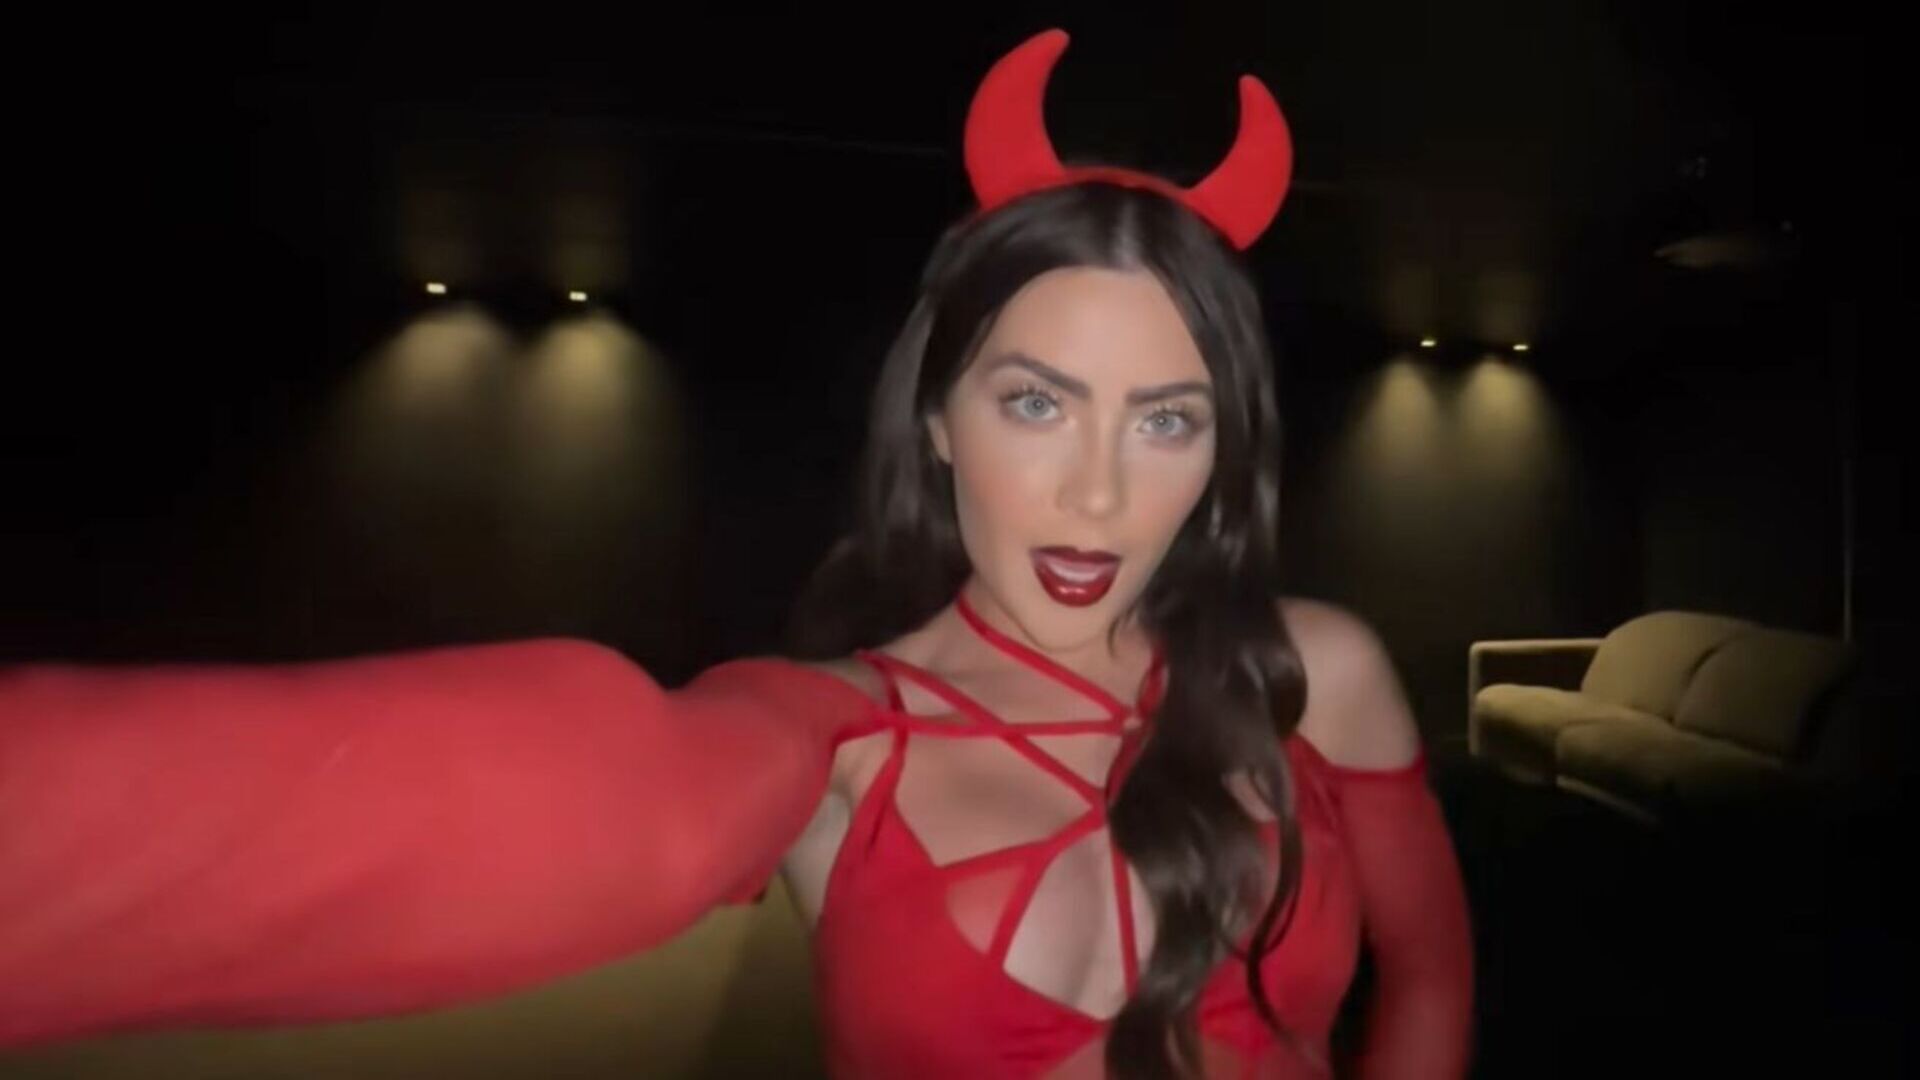 Jade Picon causa comoção na web ao mostrar fantasia de Halloween em vídeo